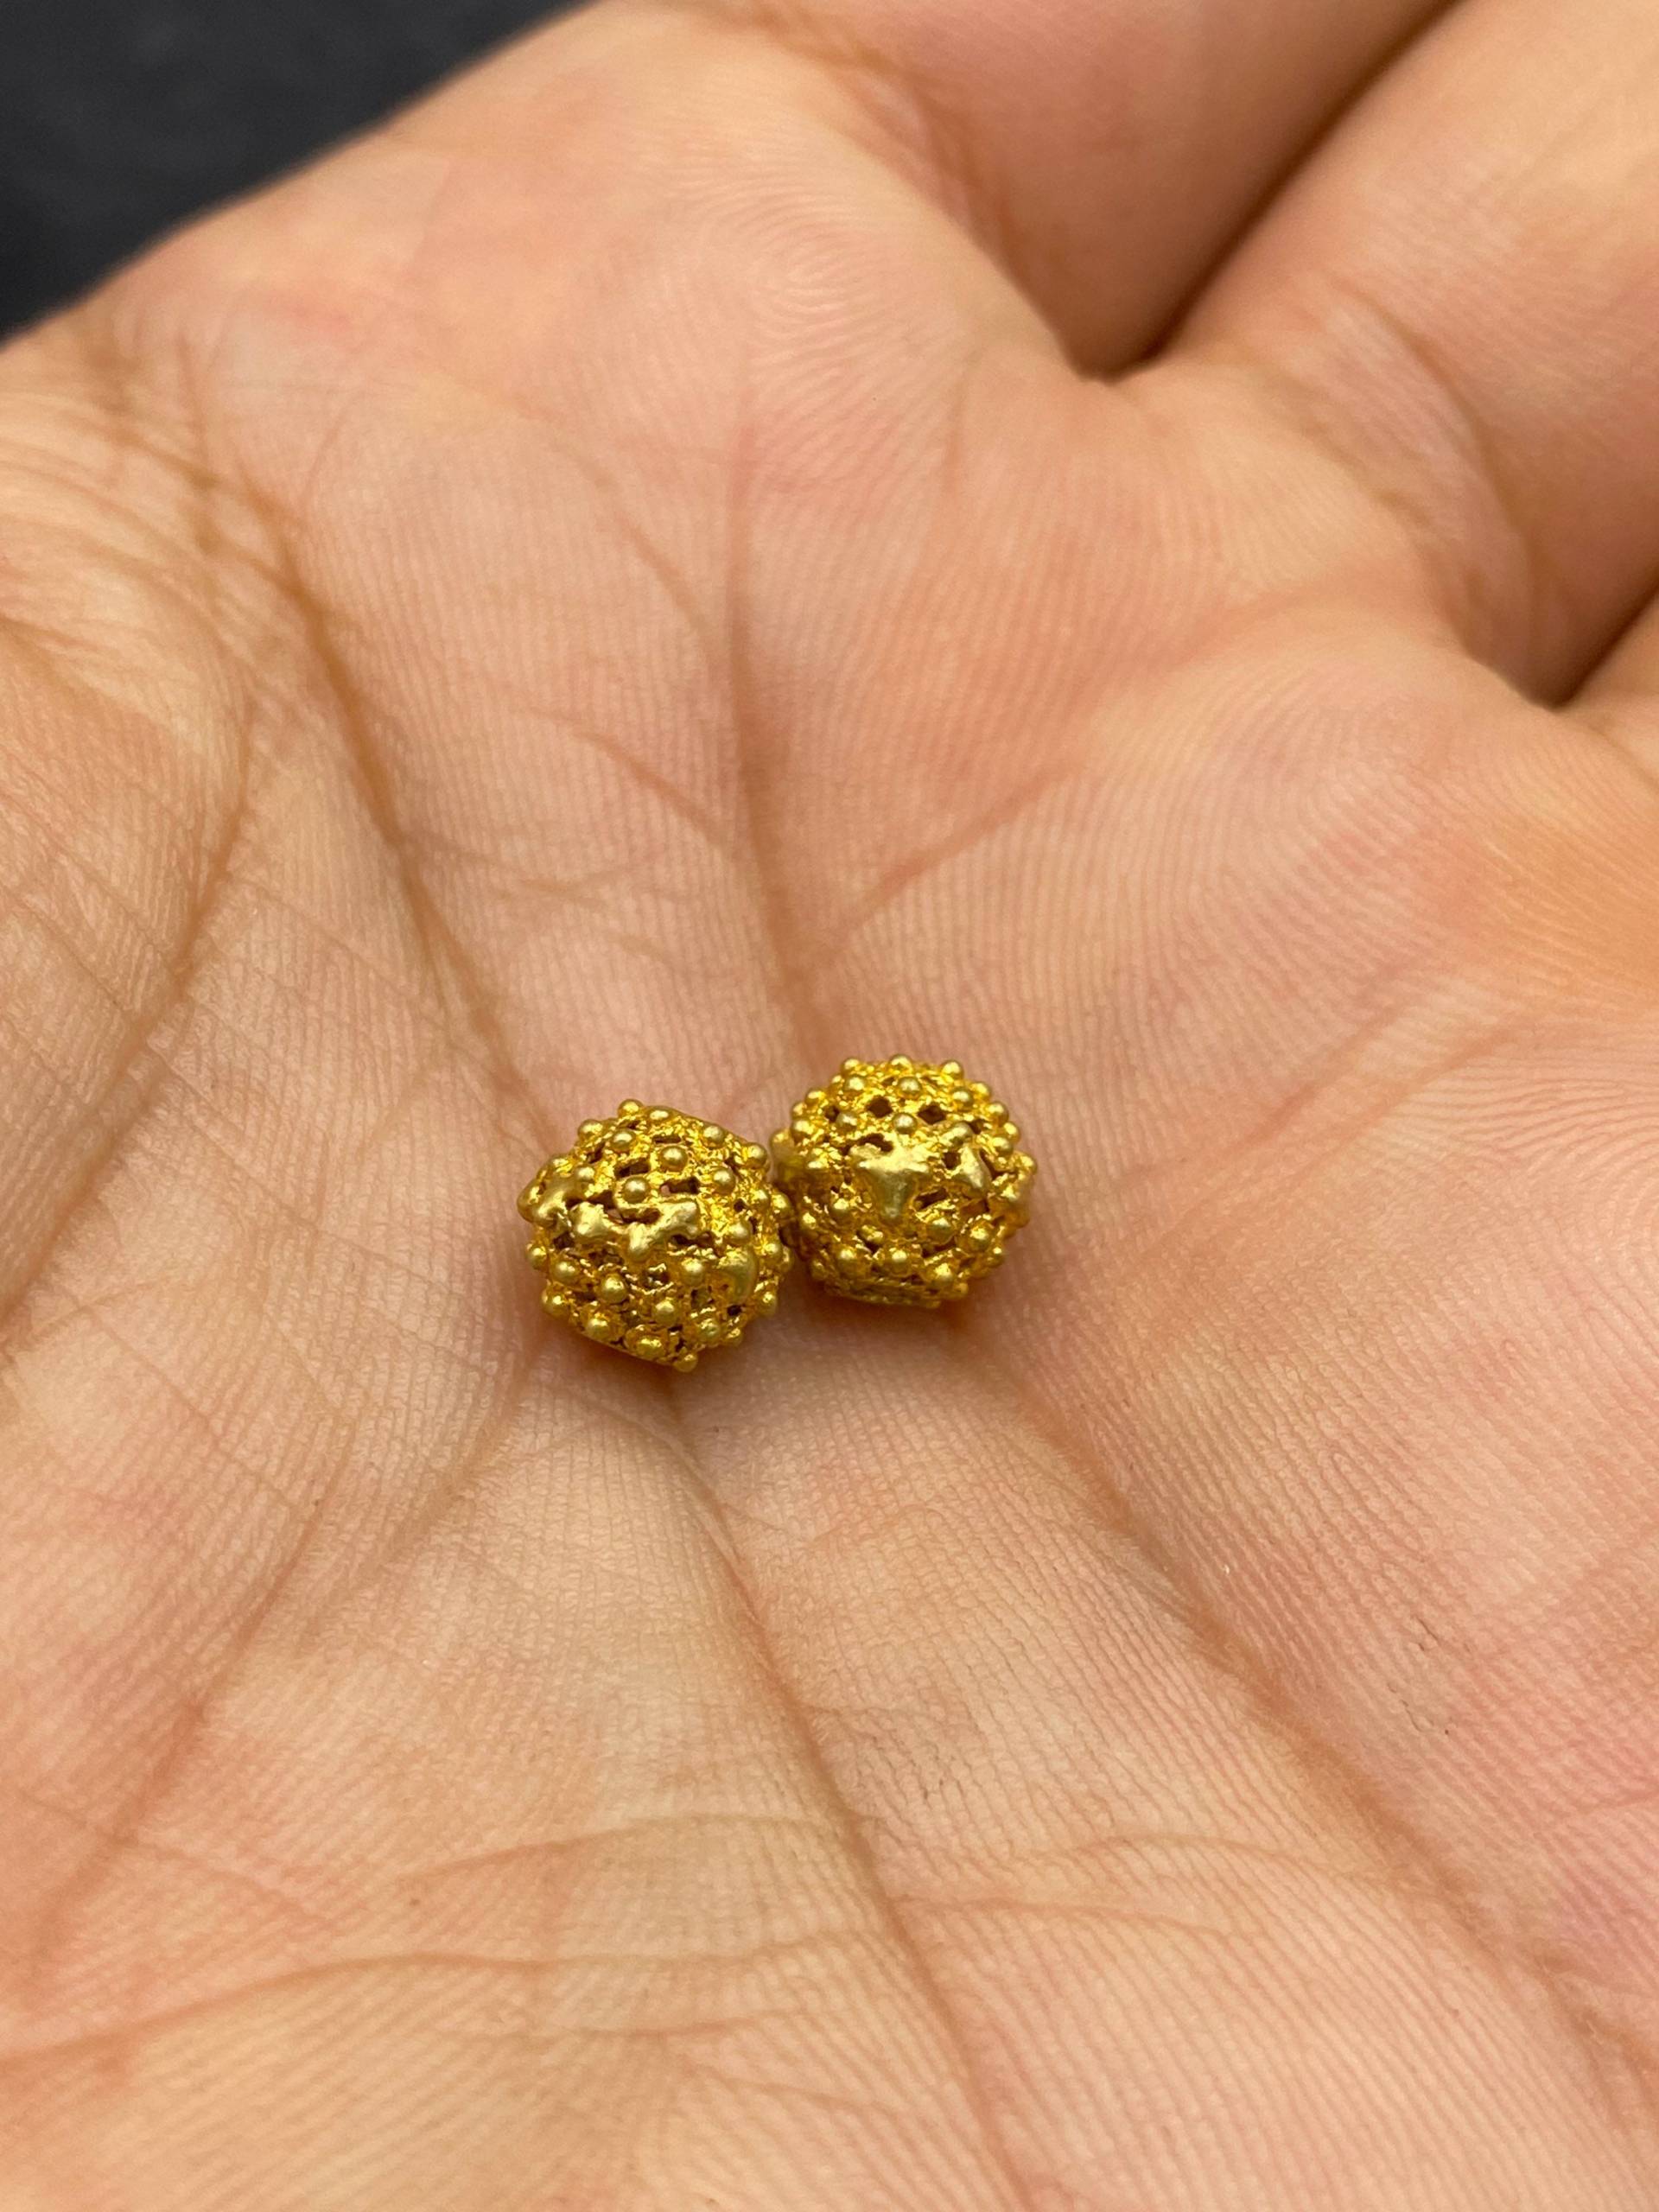 Seltene Uralte 22K Gold Filigrane Perlen Unikat Handgefertigt Ein Paar von Kabulemporium